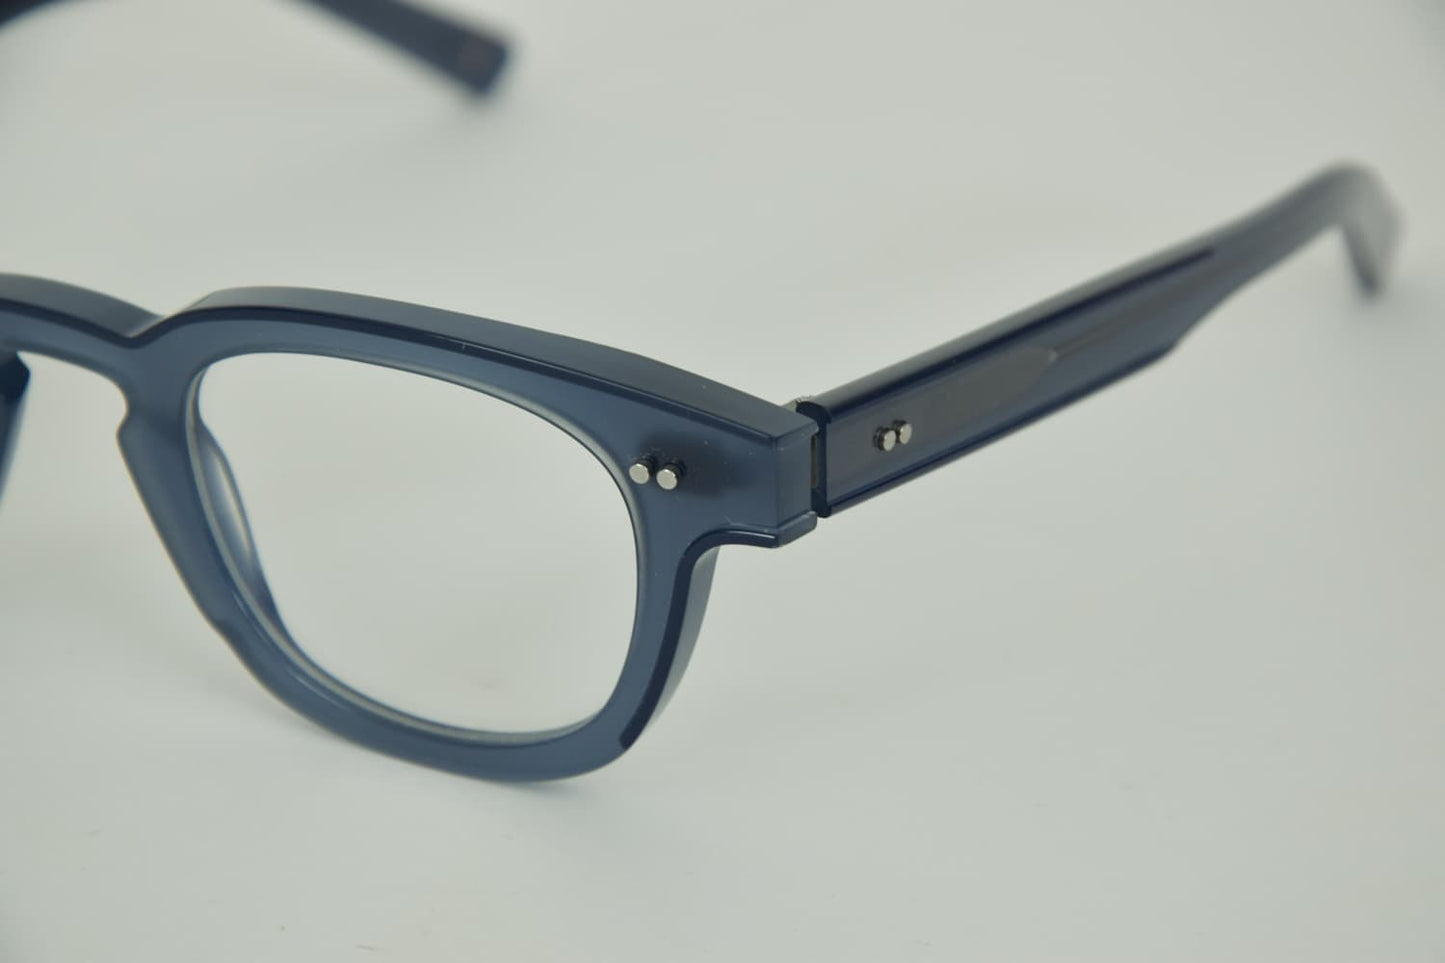 Foto dettaglio di Occhiali da Vista Uomo Brando 9101 Azzurro